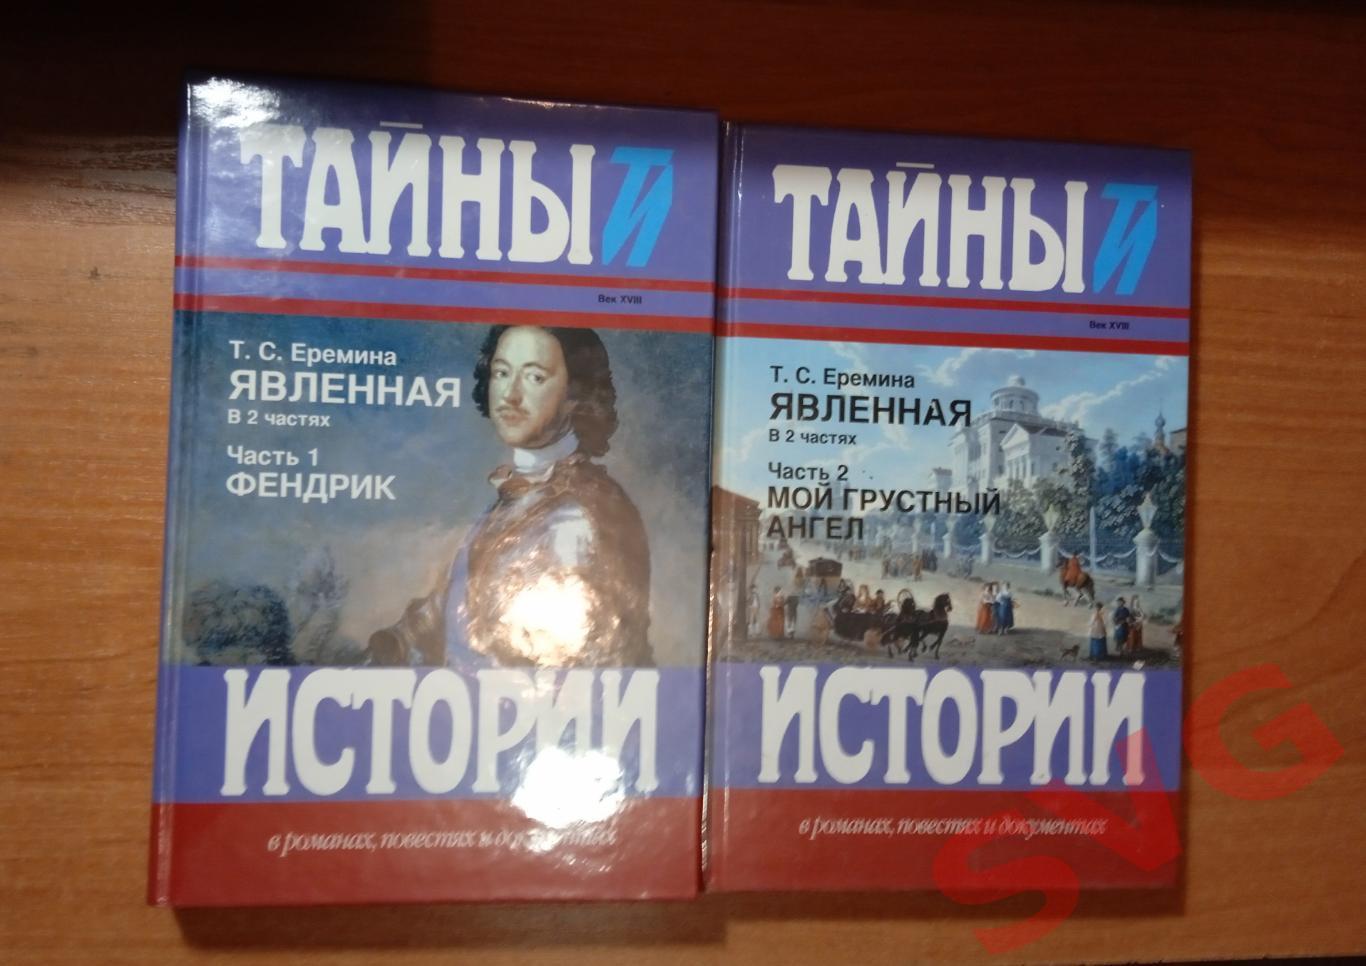 Т. С. Ерёмина - Явленная (исторический роман в 2-х томах)